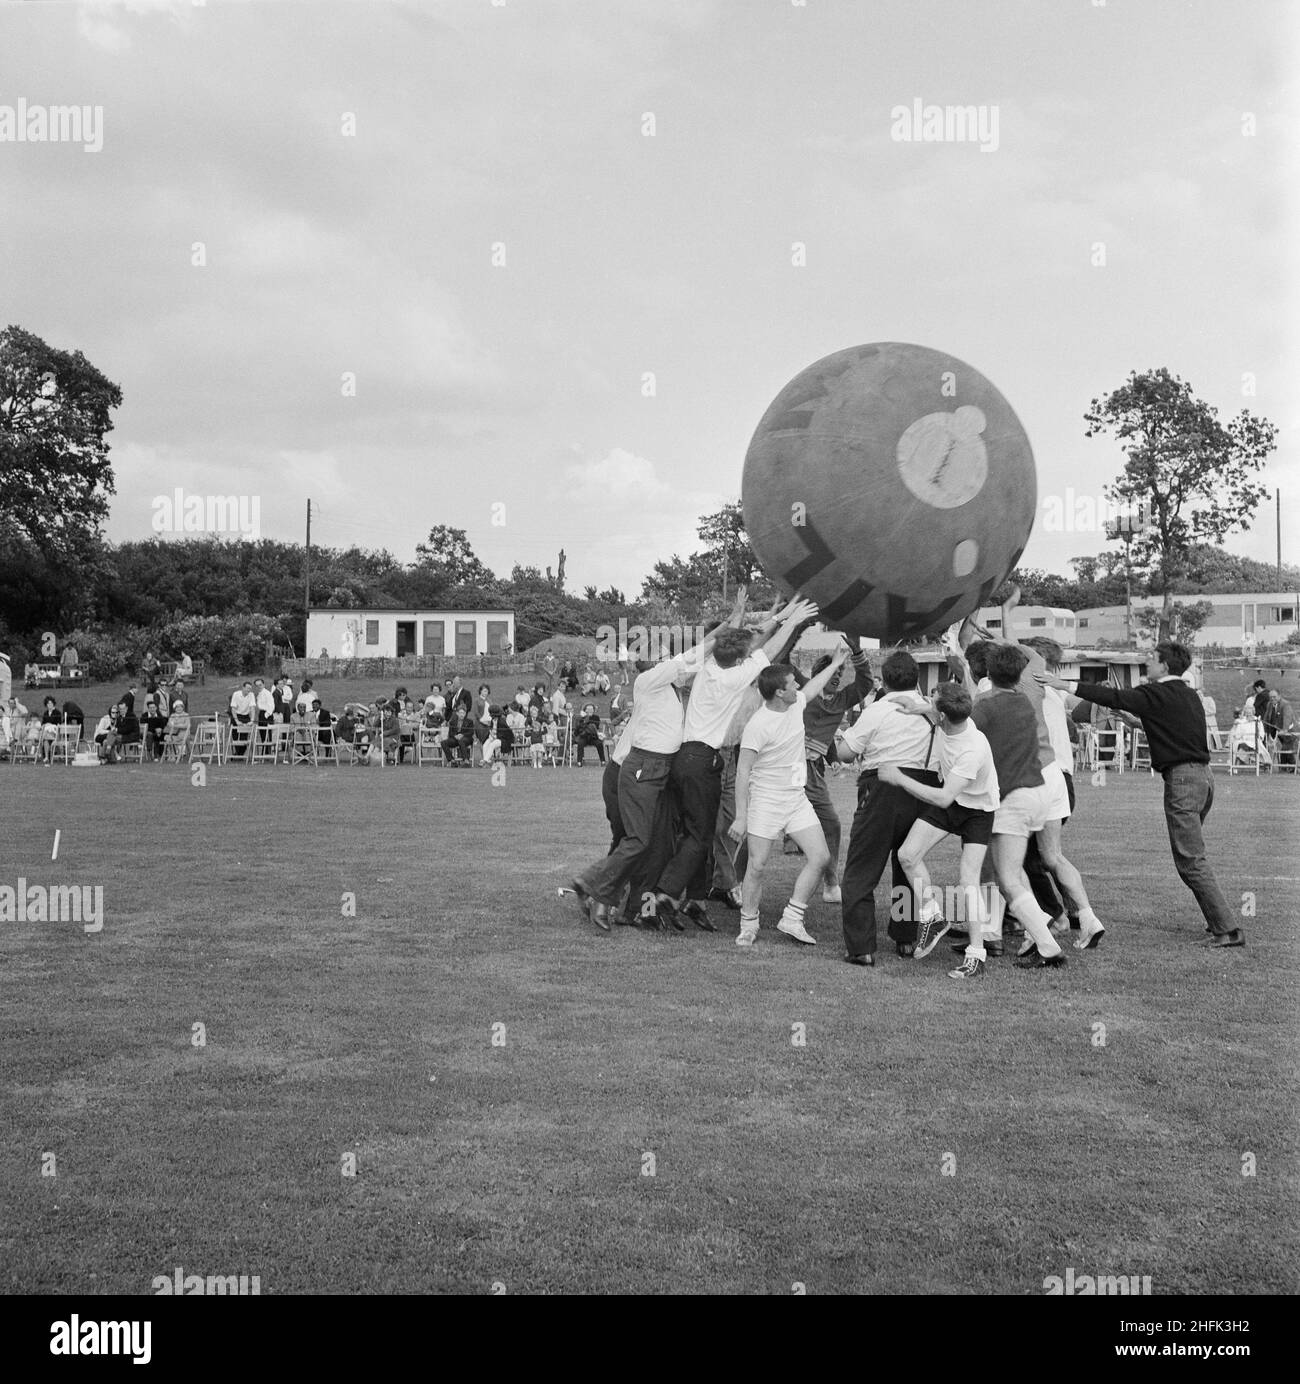 Laing Sports Ground, Rowley Lane, Elstree, Barnett, London, 22/06/1963. Ein Blick auf ein pushball-Spiel, bei dem der Ball über die Köpfe der Teilnehmer gehoben wurde, während des jährlichen Laing Sports Day auf dem Laing Sports Ground in Elstree. Im Jahr 1964 wurde Laings jährlicher Sporttag am 22nd. Juni auf dem Sportplatz auf der Rowley Lane in Elstree abgehalten. Zu den Veranstaltungen gehörten Kinderrennen, Tennis zwischen den Filialen, ein Fußballwettbewerb, ein Sportprogramm und Boule. Das Oxford-Team gewann den pushball-Wettbewerb. Stockfoto